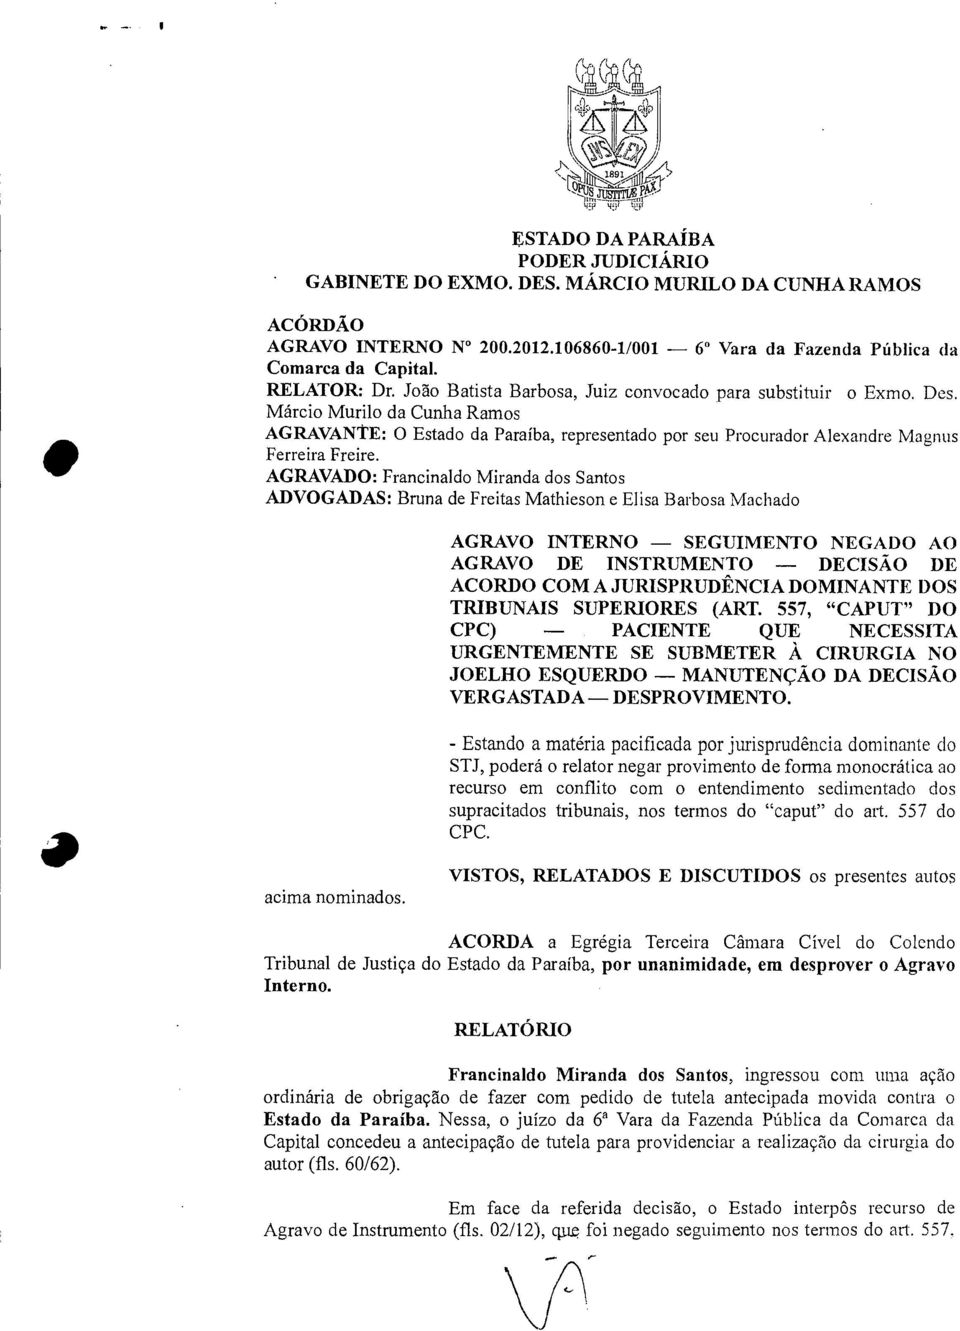 Márcio Murilo da Cunha Ramos AGRAVANTE: O Estado da Paraíba, representado por seu Procurador Alexandre Magnus Ferreira Freire.